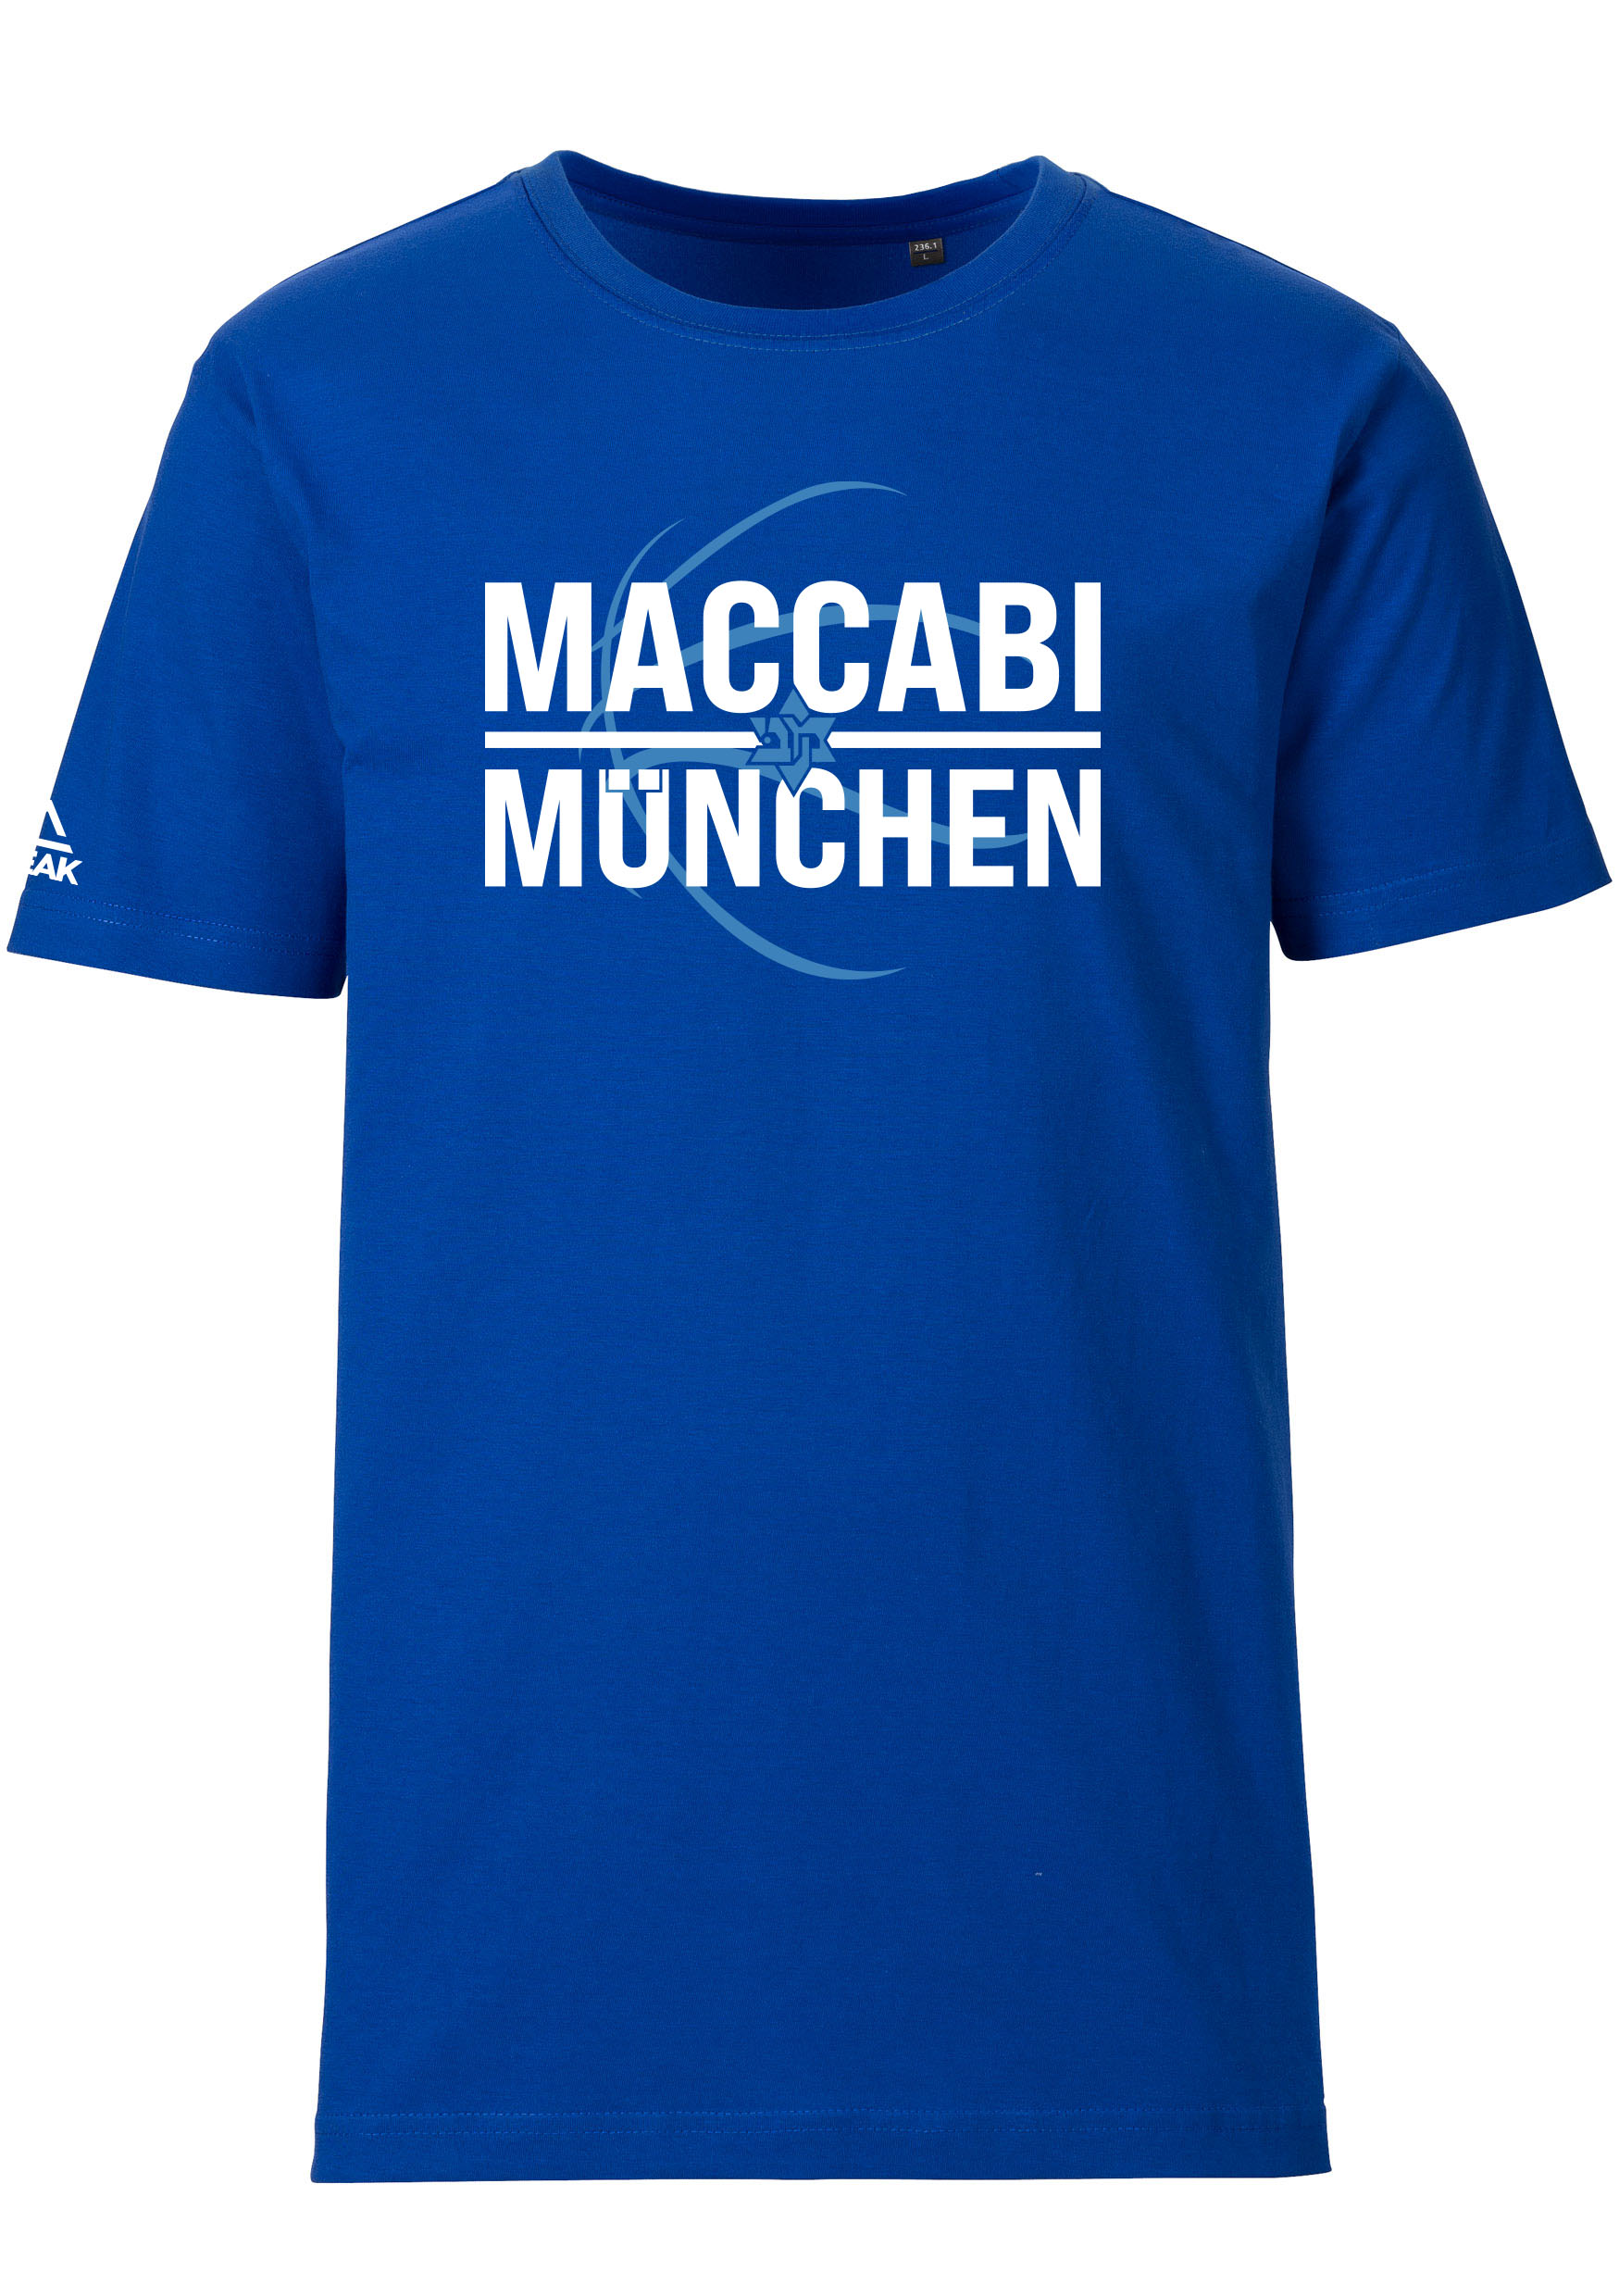 Maccabi München T-Shirt